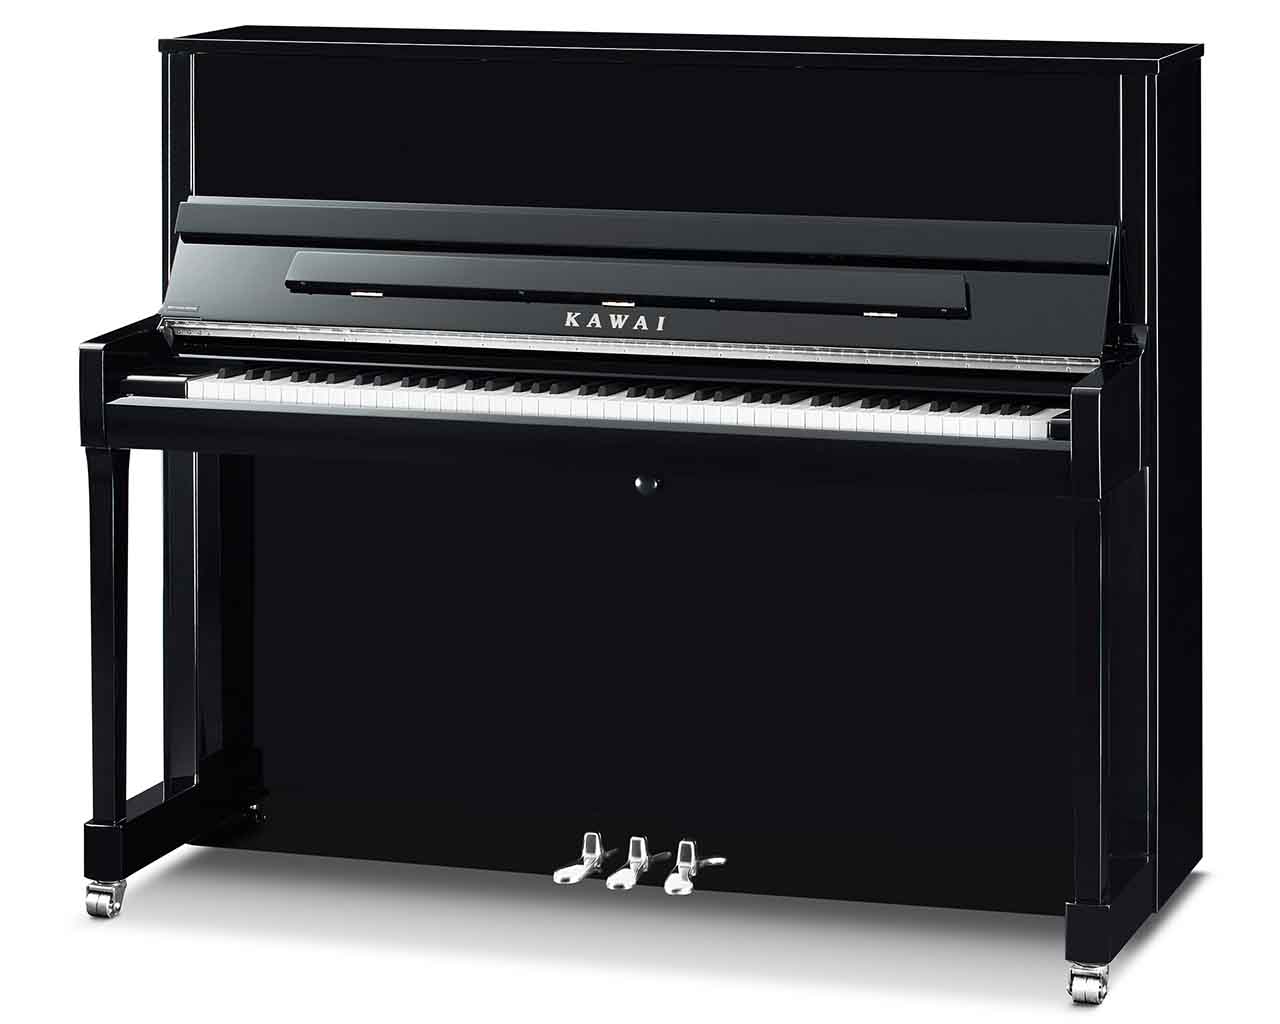 Kawai-K-300-EP-SL-ATX-4-Klavier-schwarz-Pianohaus-Filipski